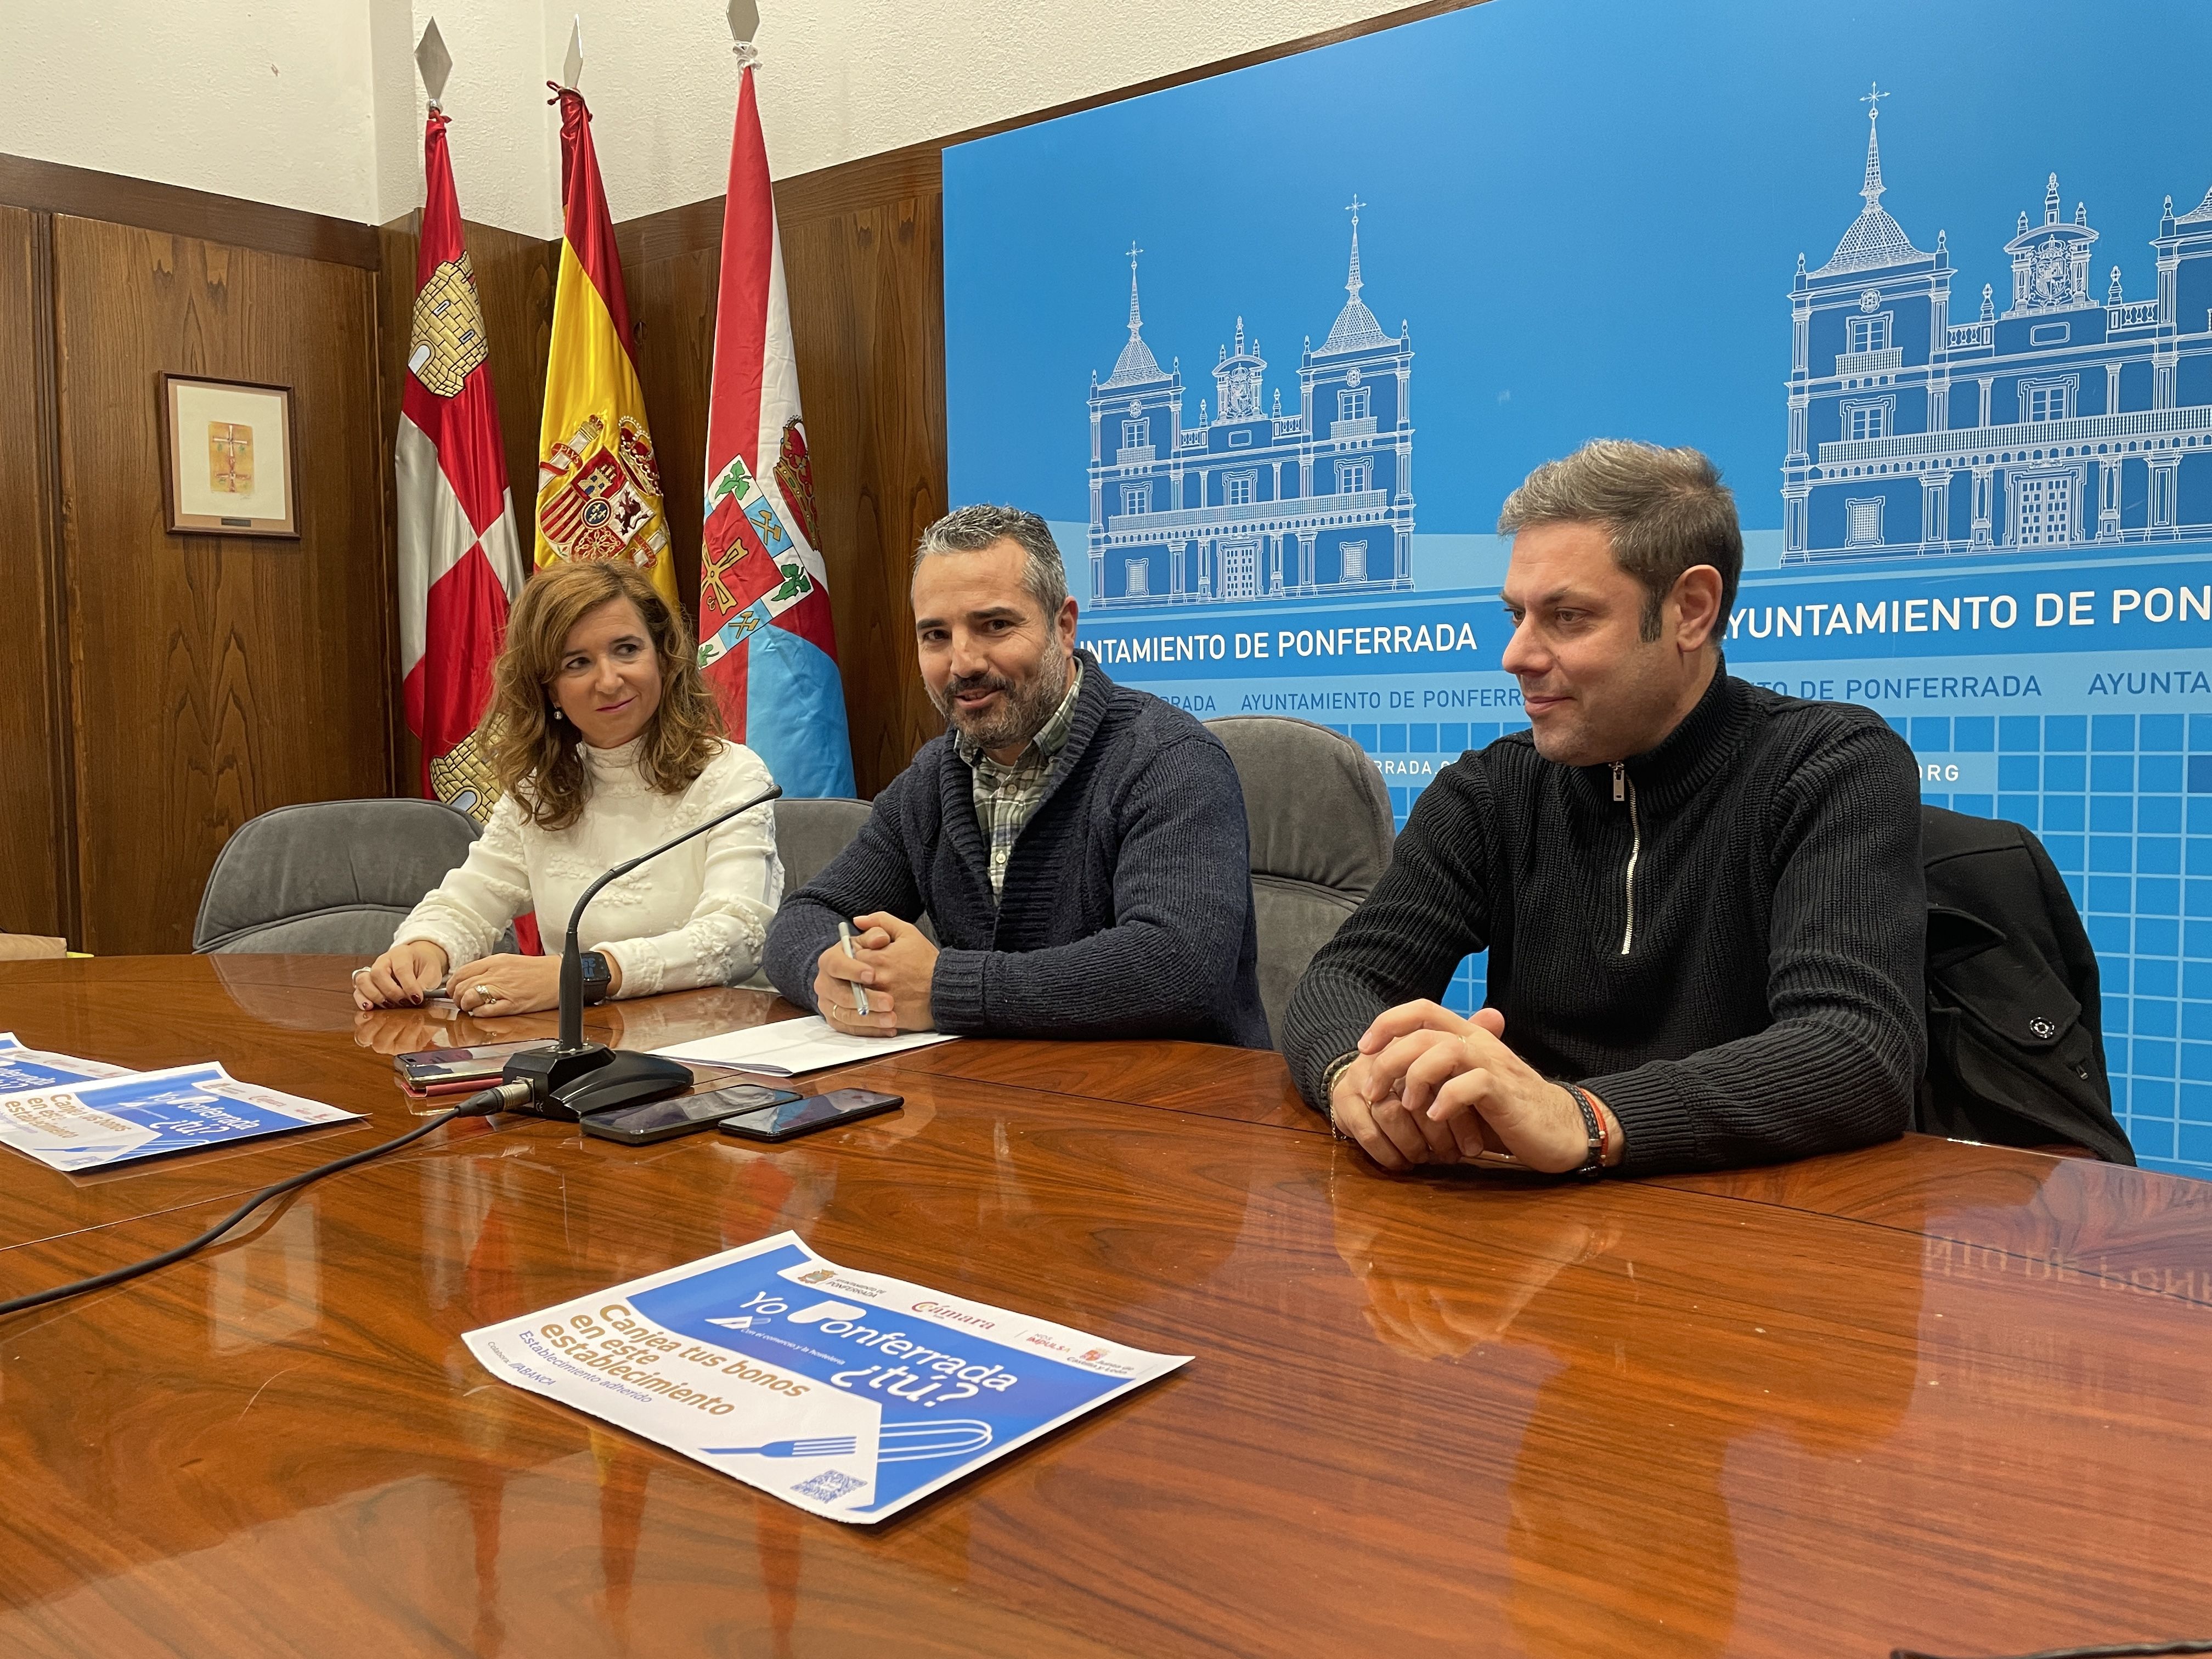 Vanesa Capilla, David Pacios e Iván Alonso en el Ayuntamiento de Ponferrada. | Javier Fernández